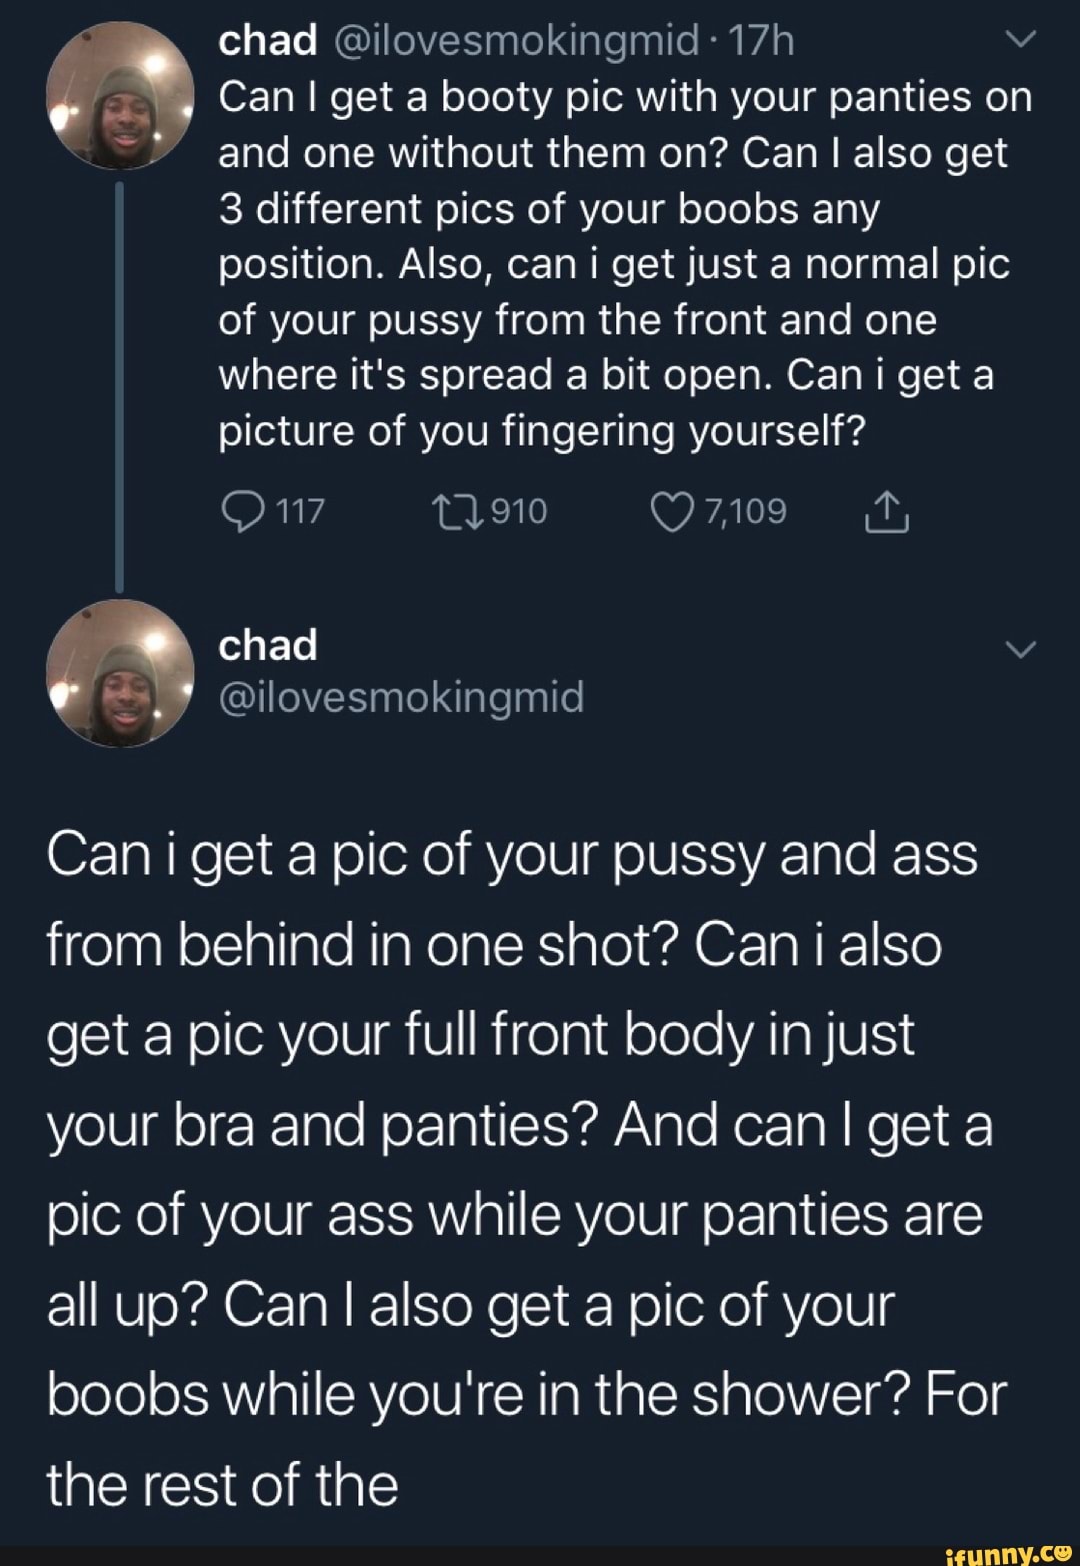 big ass women naked selfie